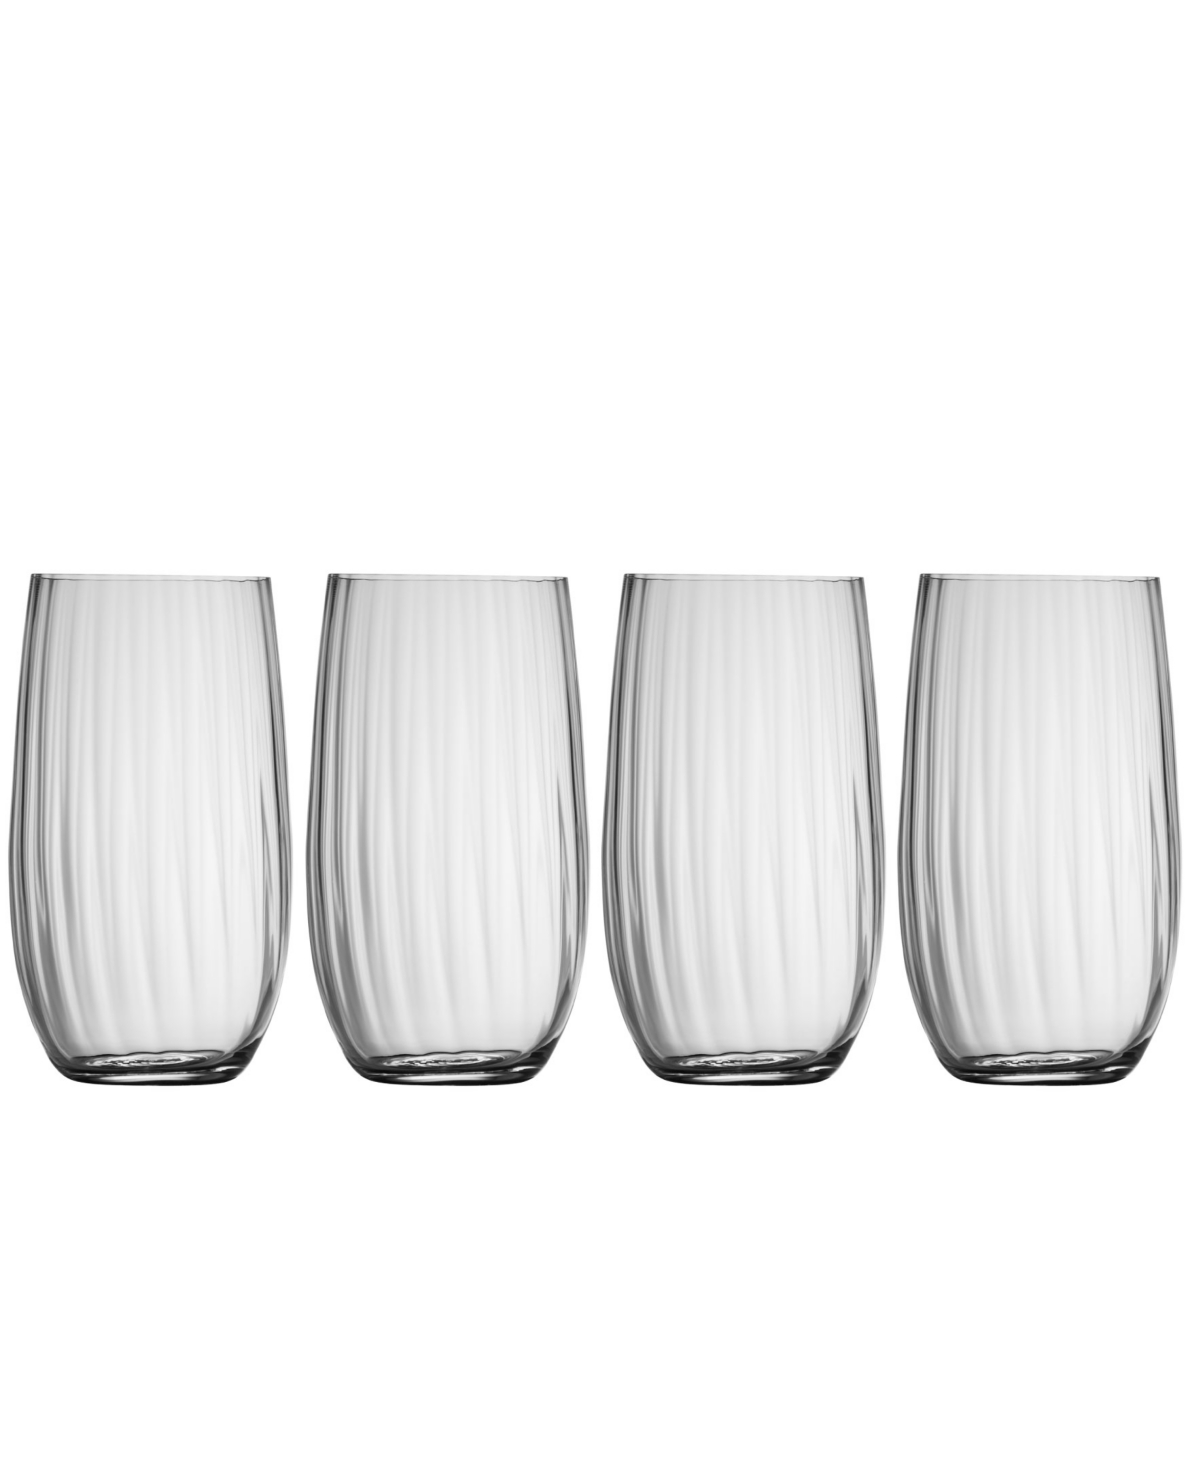 9344358 Erne Hiball Glass Set of 4 sku 9344358